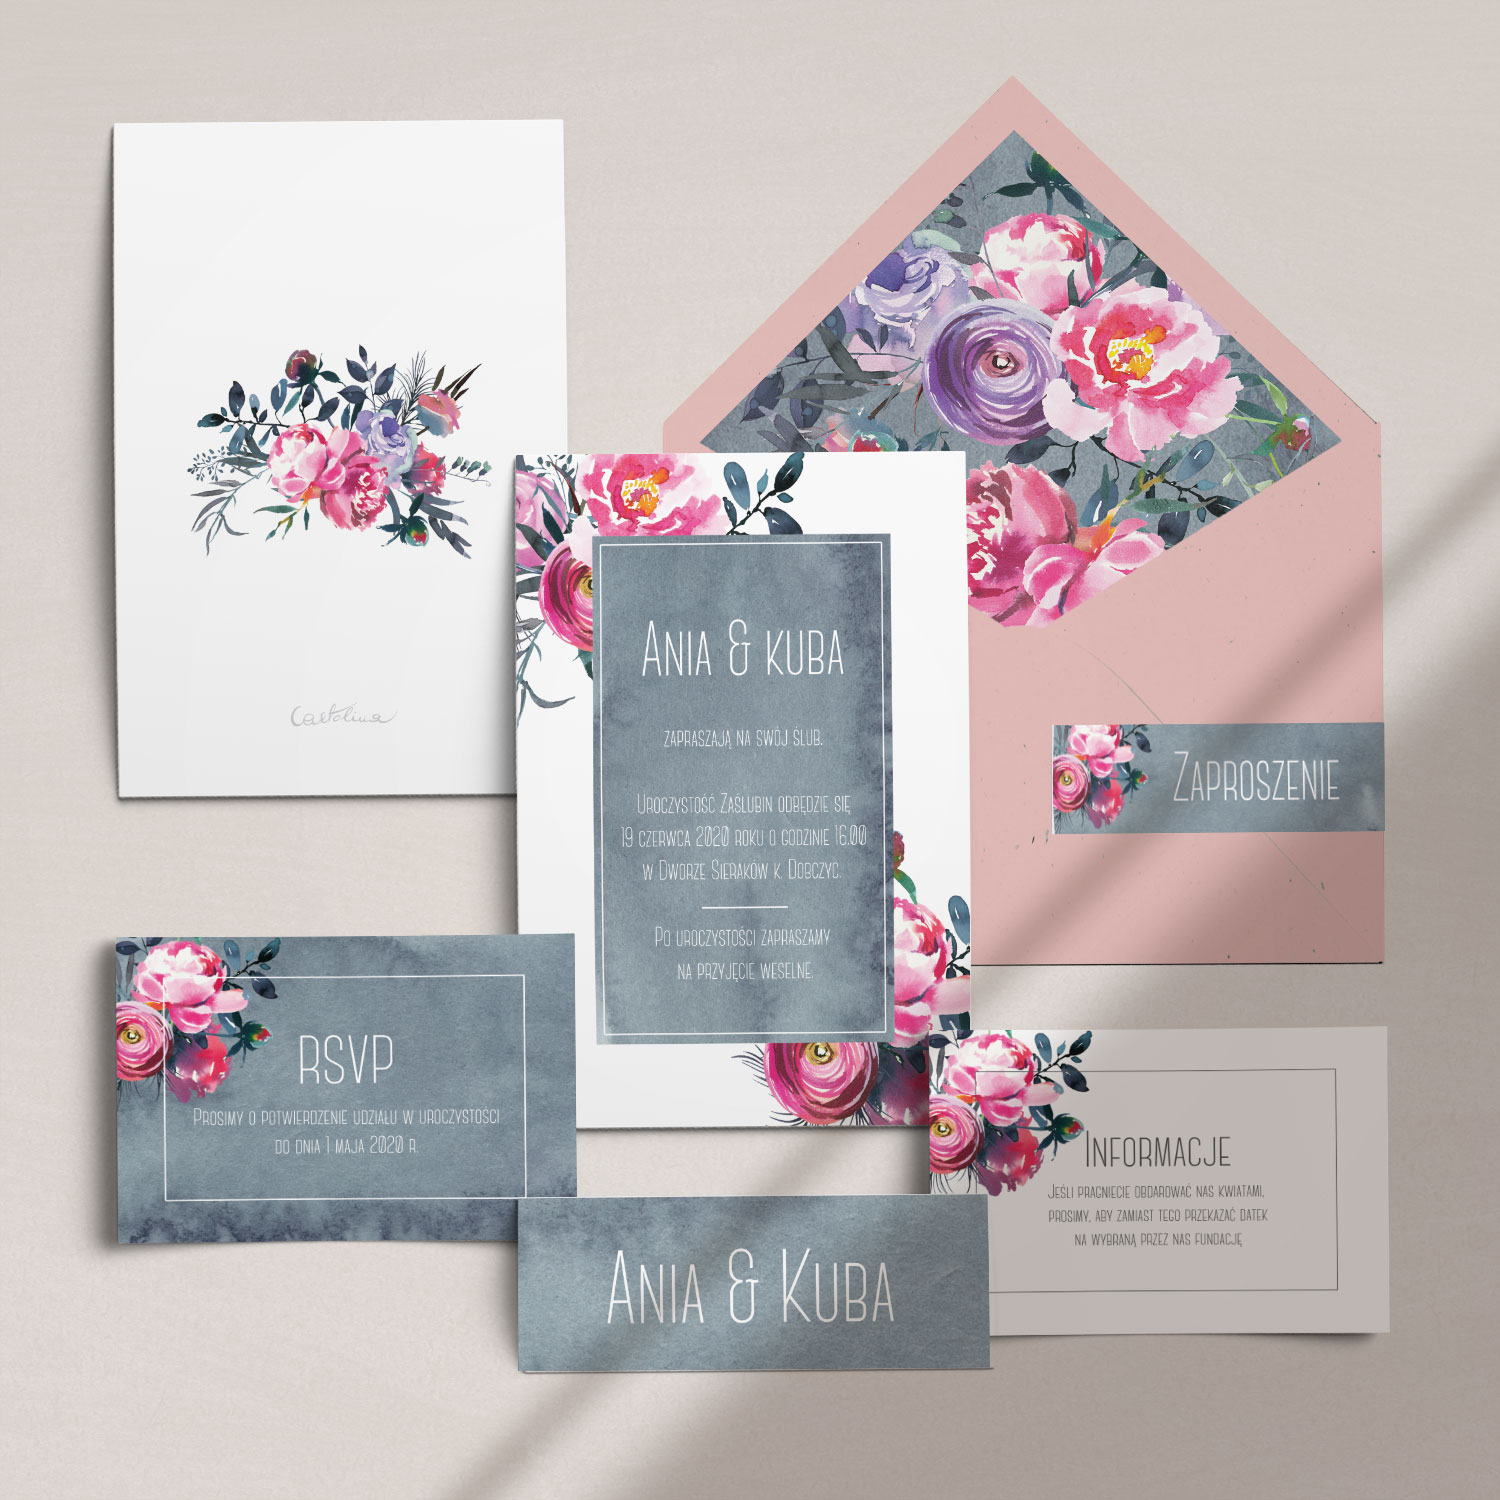 Nowoczesne zaproszenia ślubne z motywem kwiatów wraz z kopertą, RCVP oraz opaską z kolekcji Fuksja firmy Cartolina - zaproszenia ślubne